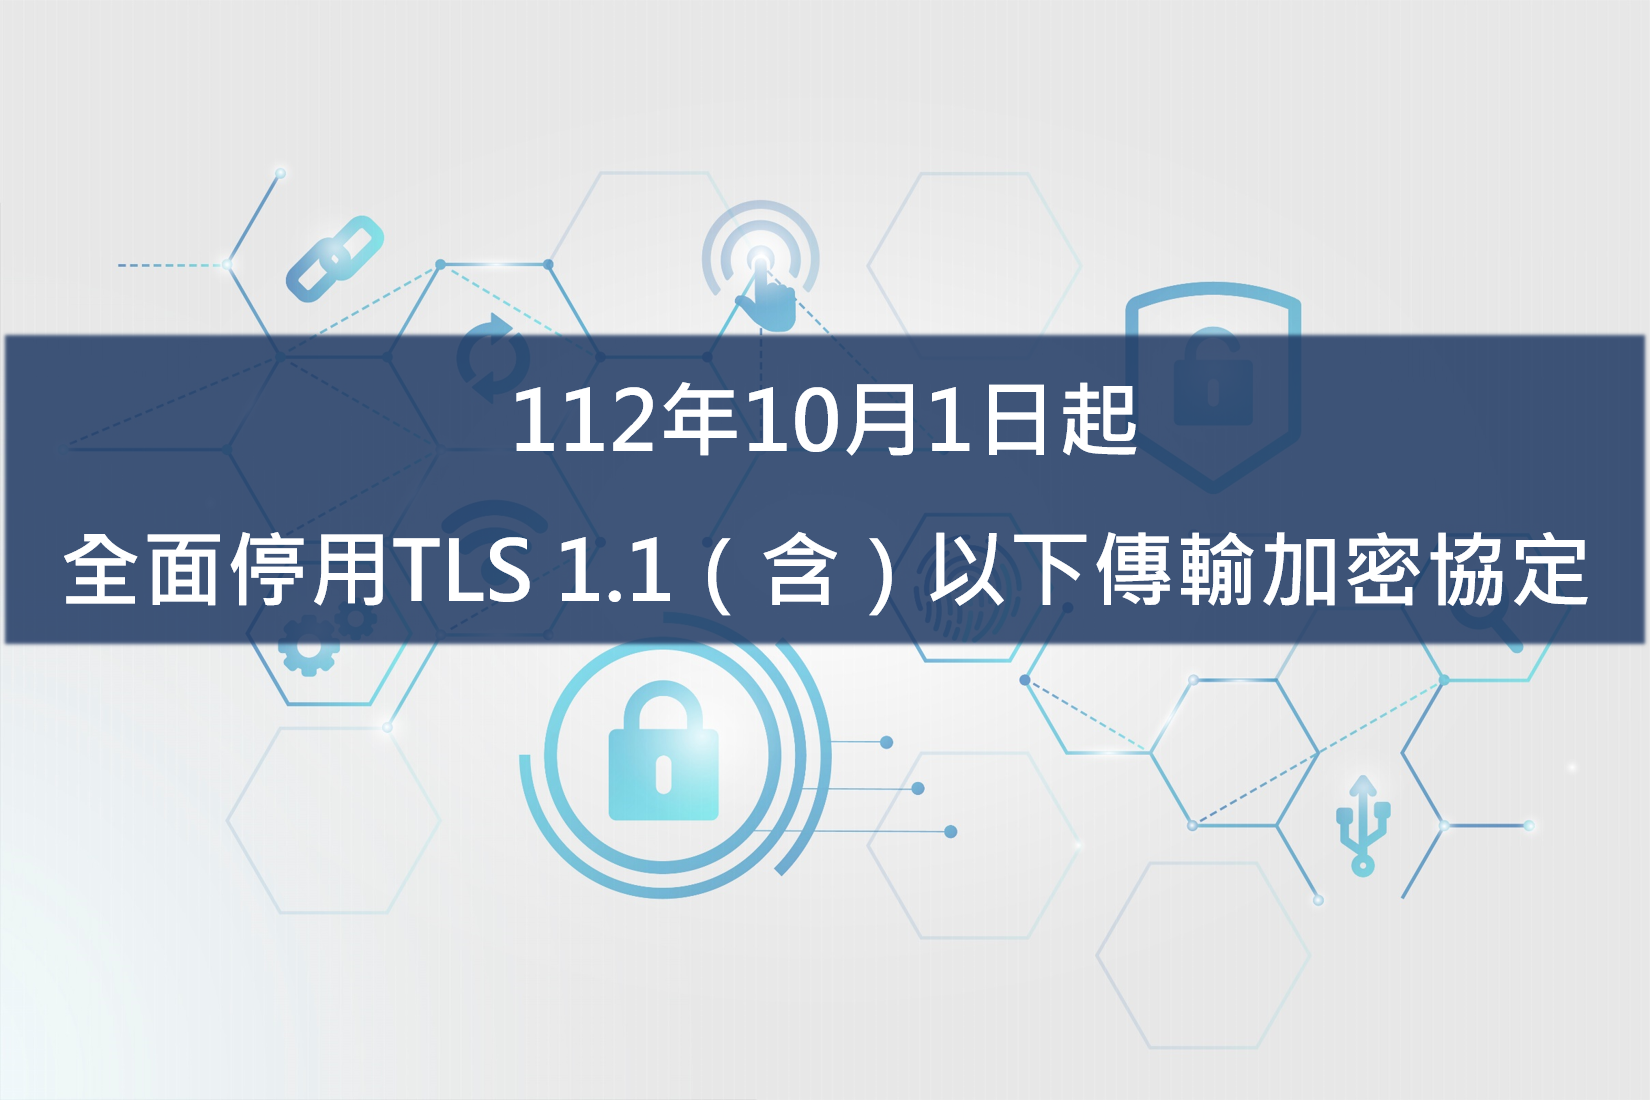 【重要公告】112年10月1日起，圖書館的相關平台將全面停用TLS 1.1（含）以下傳輸加密協定��